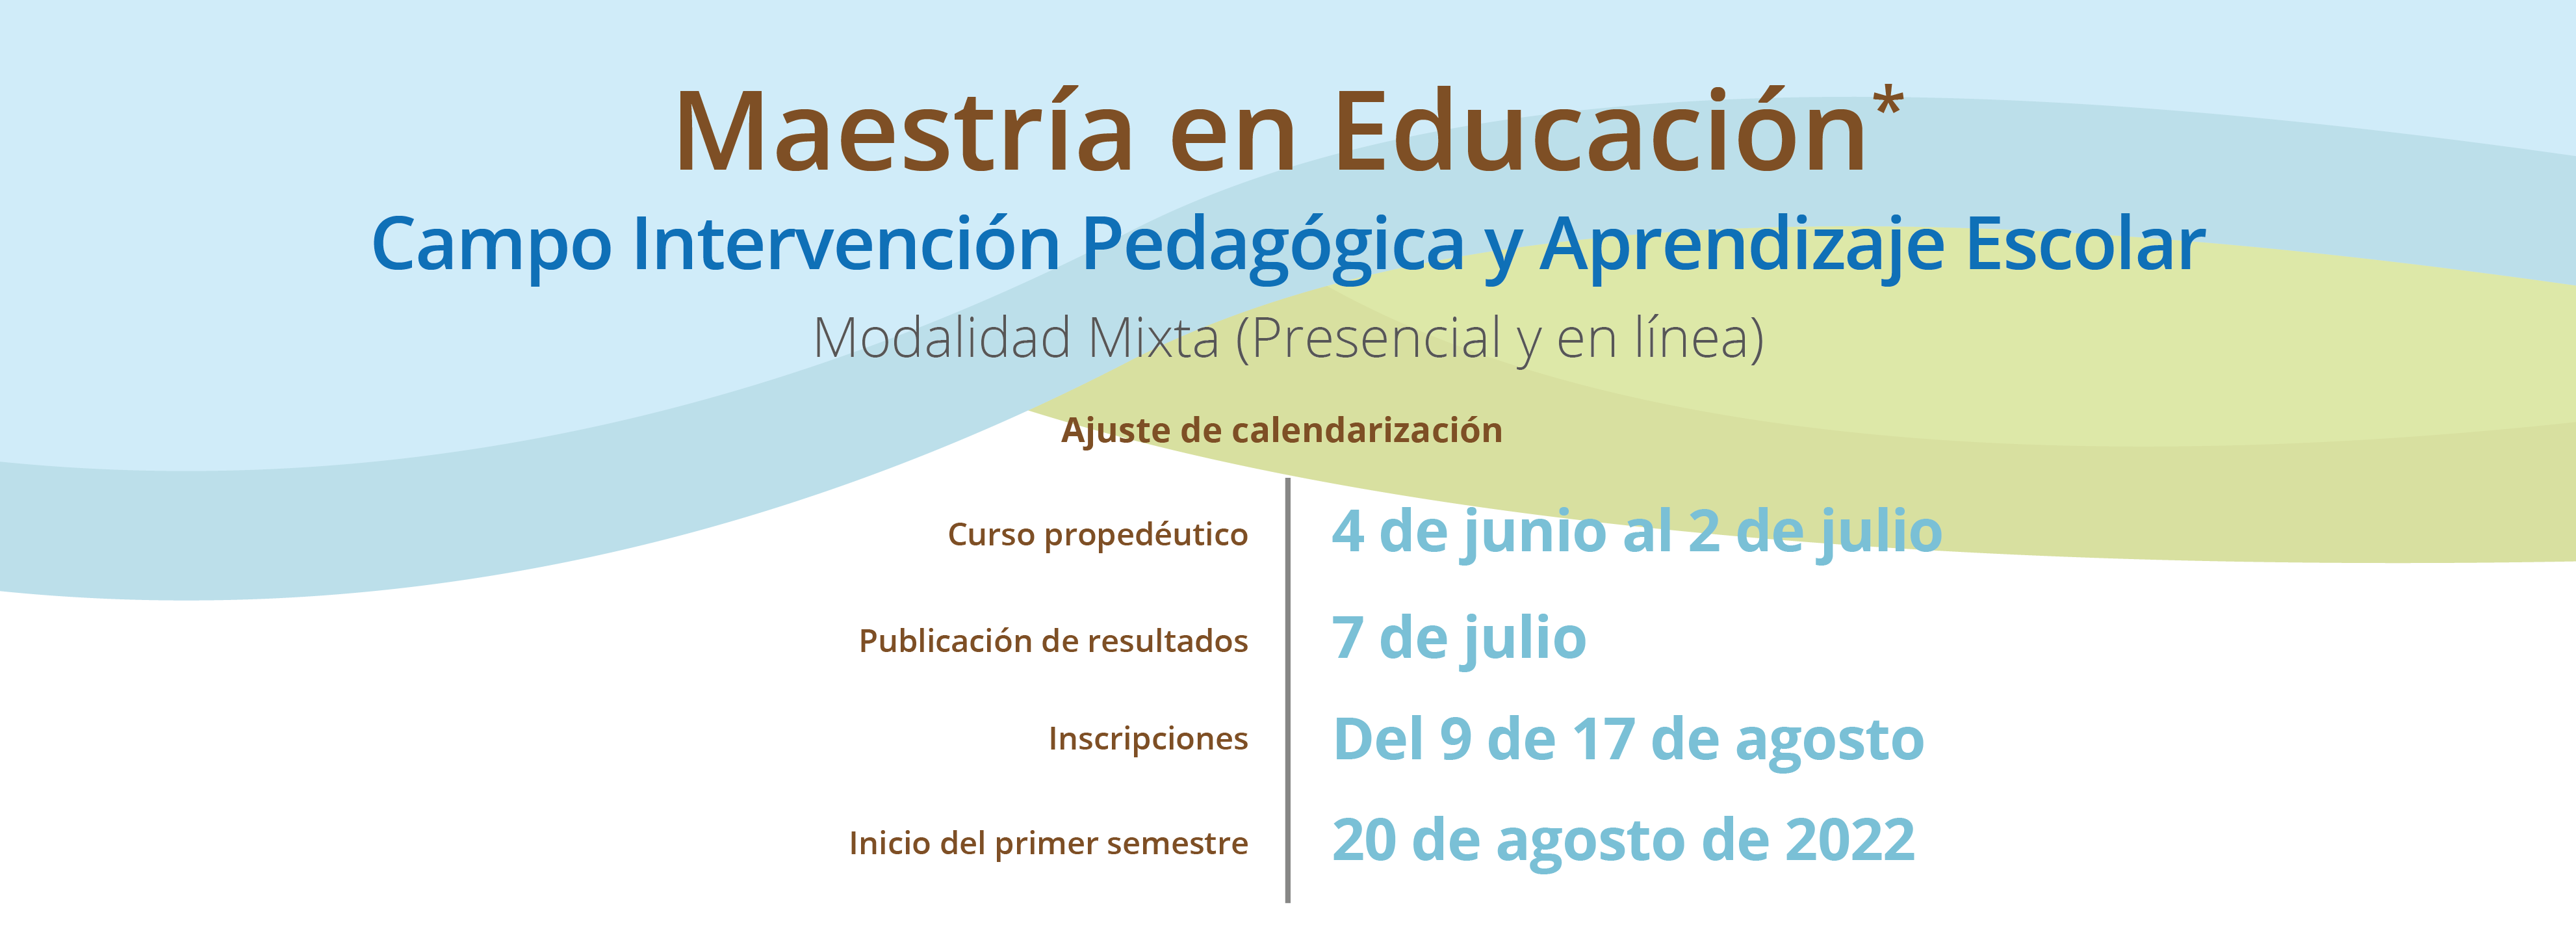 Convocatoria_Maestria_en_Educacion_2022_Ajuste_calendario_banner_web